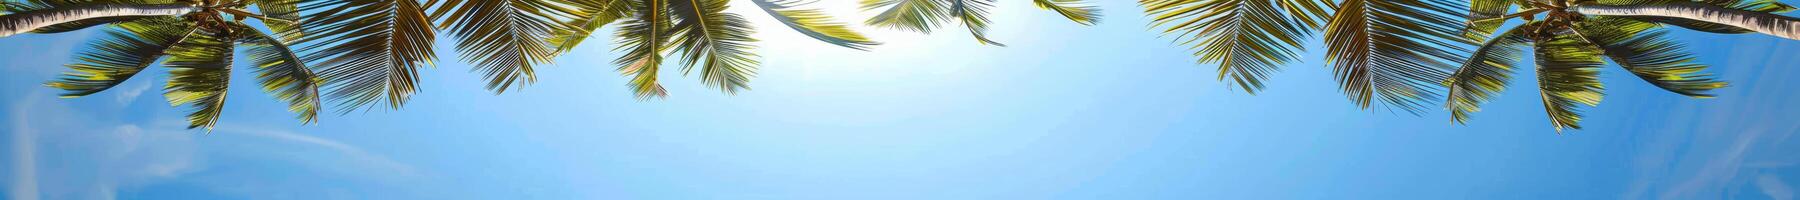 tropicale palma alberi inquadratura blu cielo nel estate foto